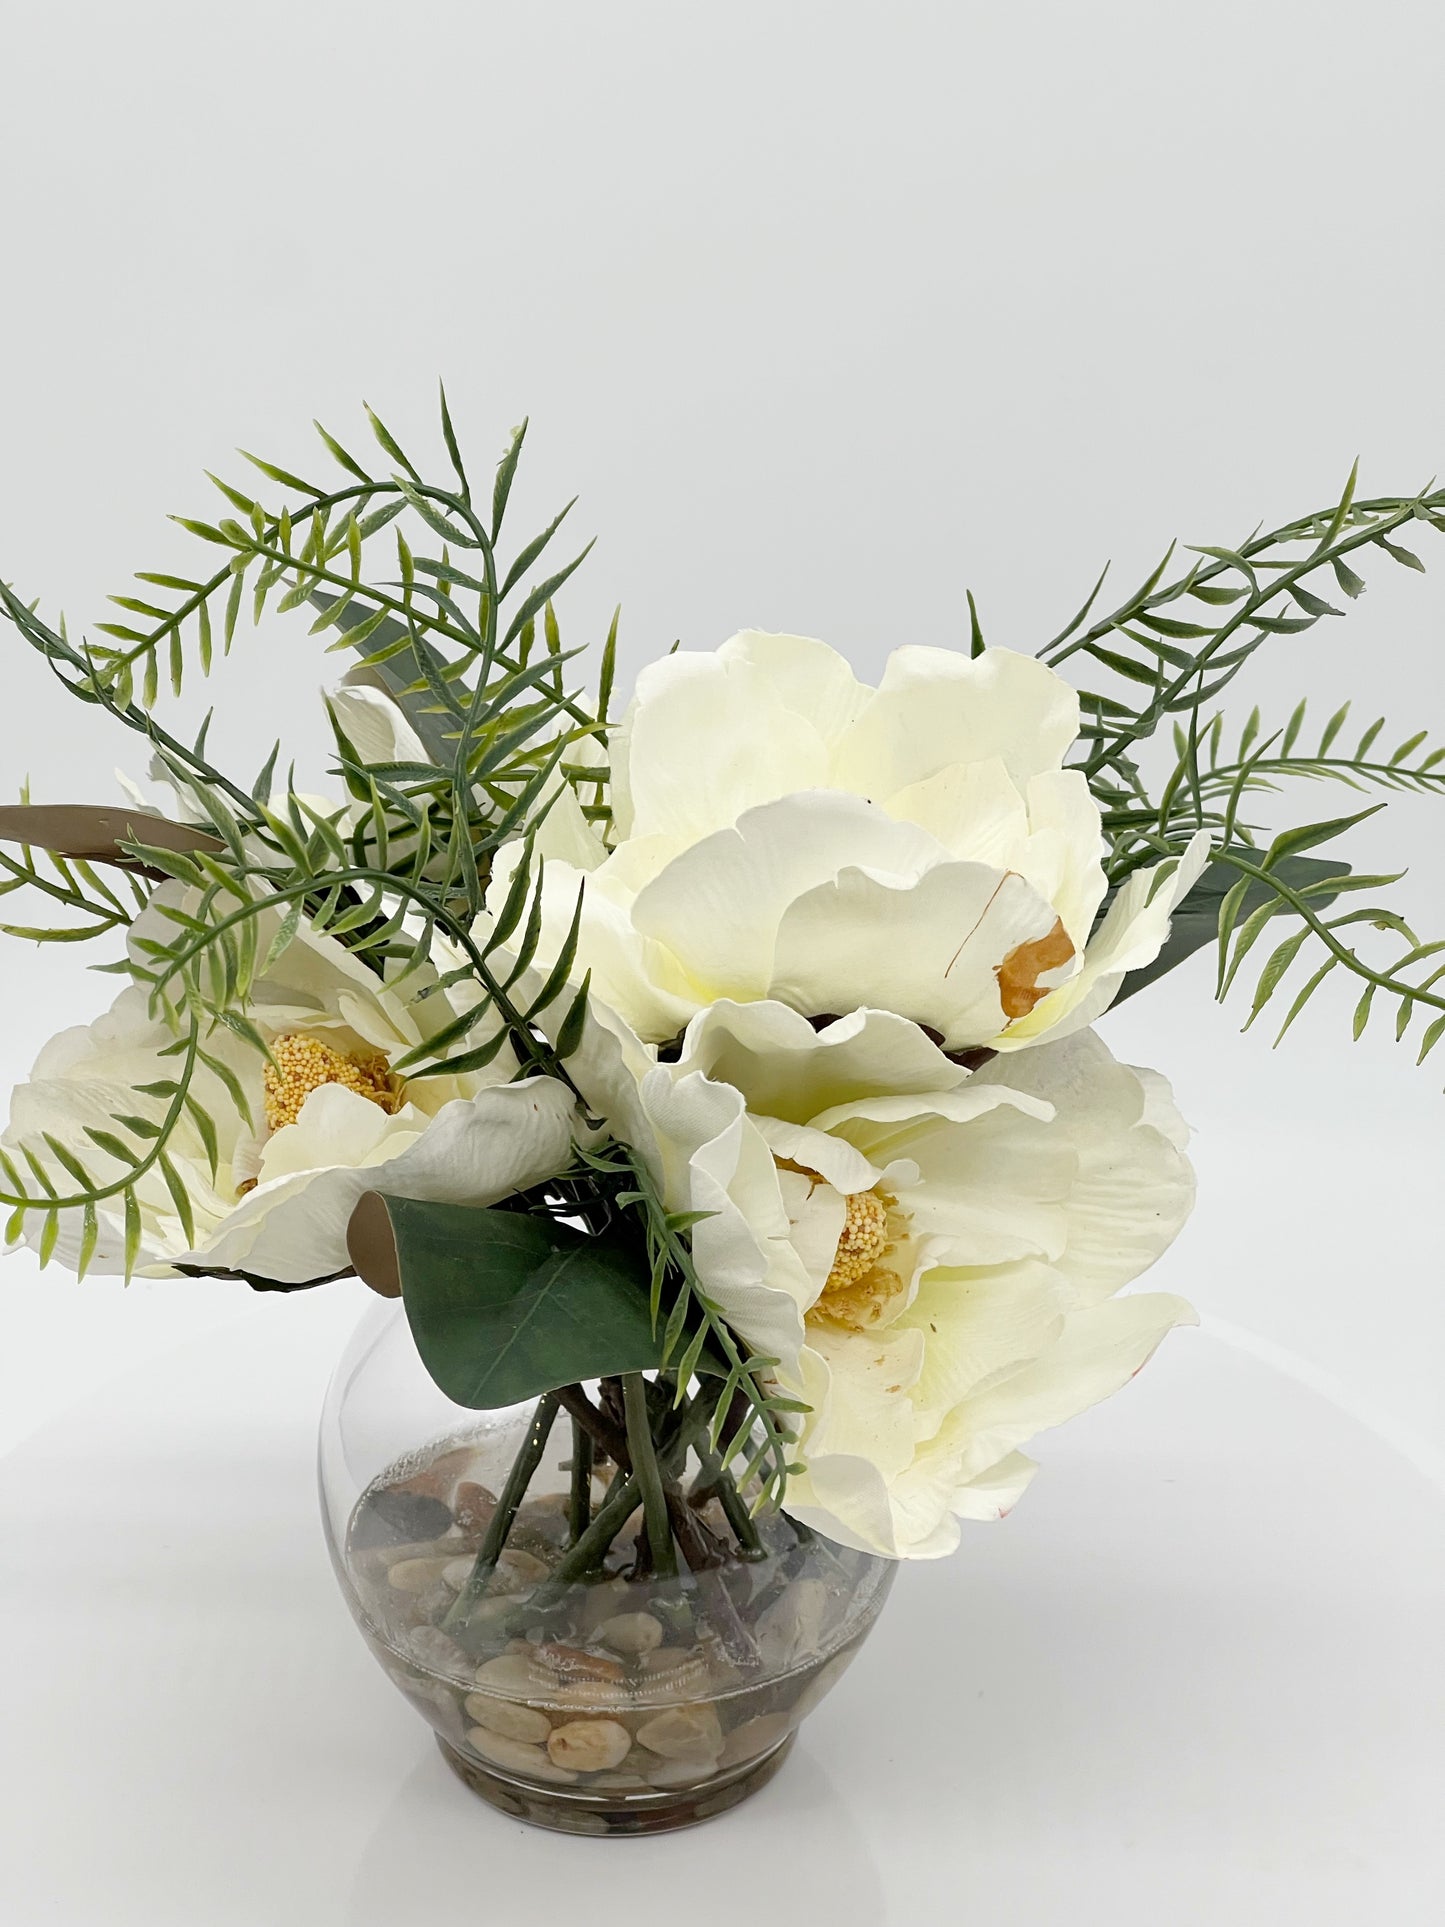 Flores de magnolia en jarrón de vidrio de 6" con piedras de río